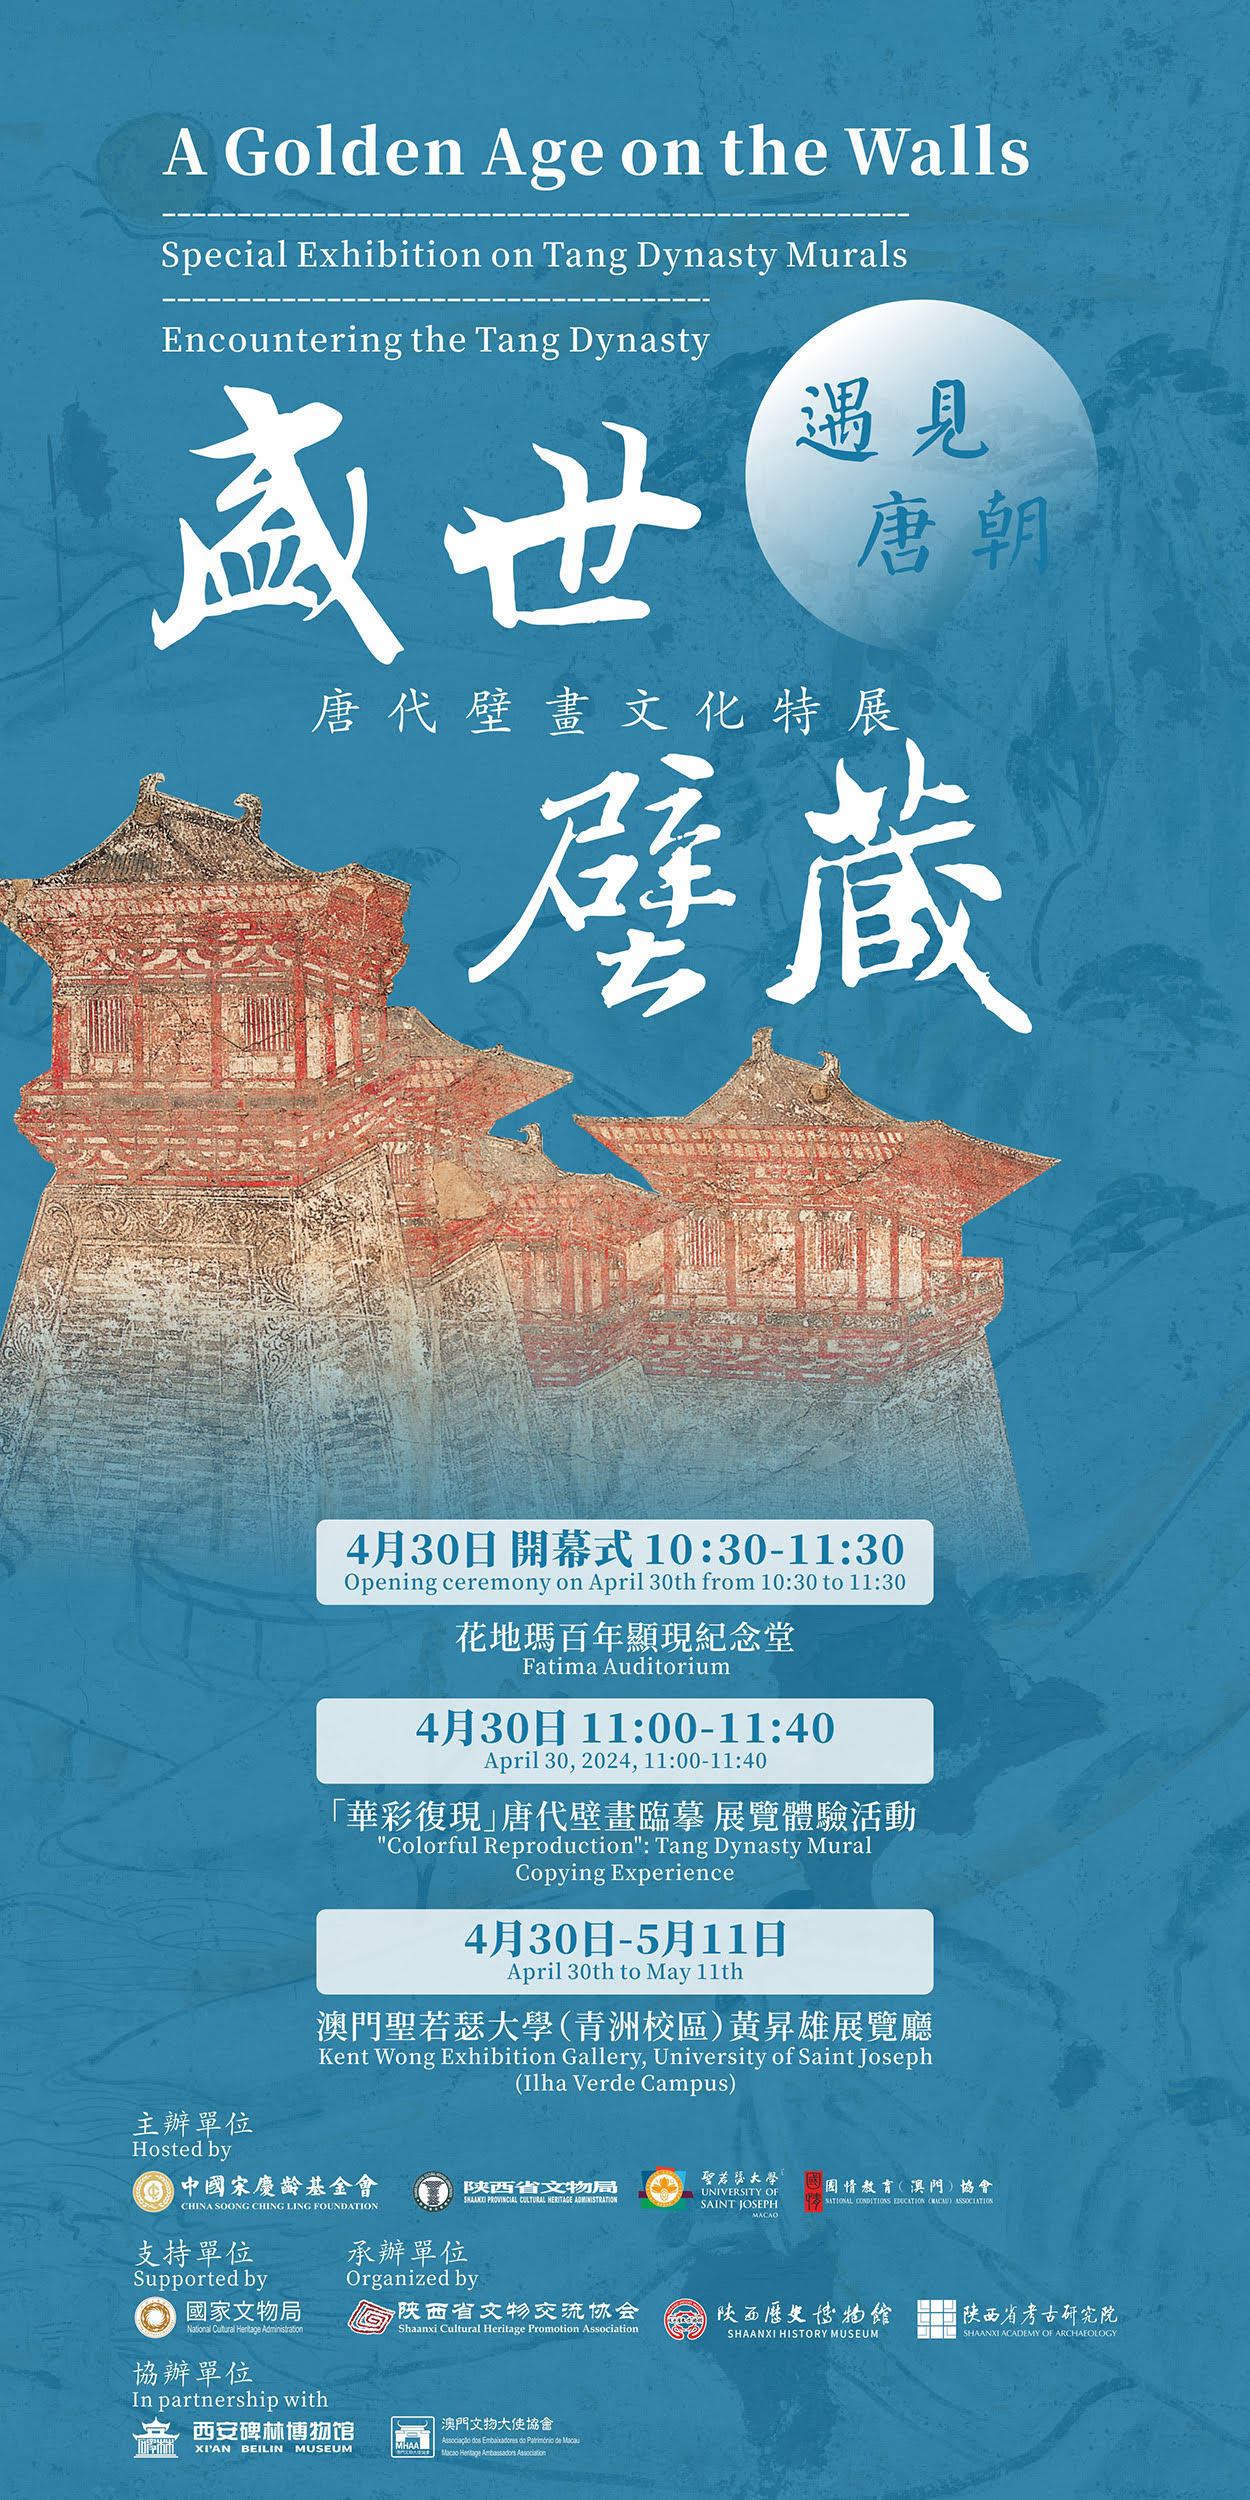 USJ | Exposição sobre murais históricos da dinastia Tang